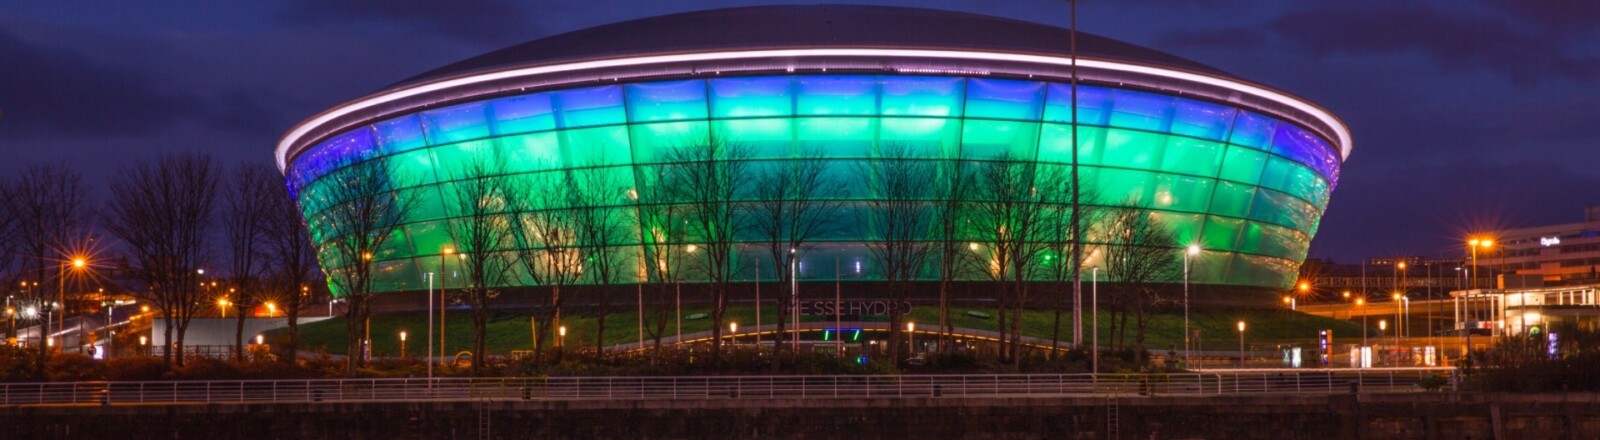 L'arena SSE Hydro illuminata di notte sul sito dello Scottish Exhibition and Conference Centre, Glasgow